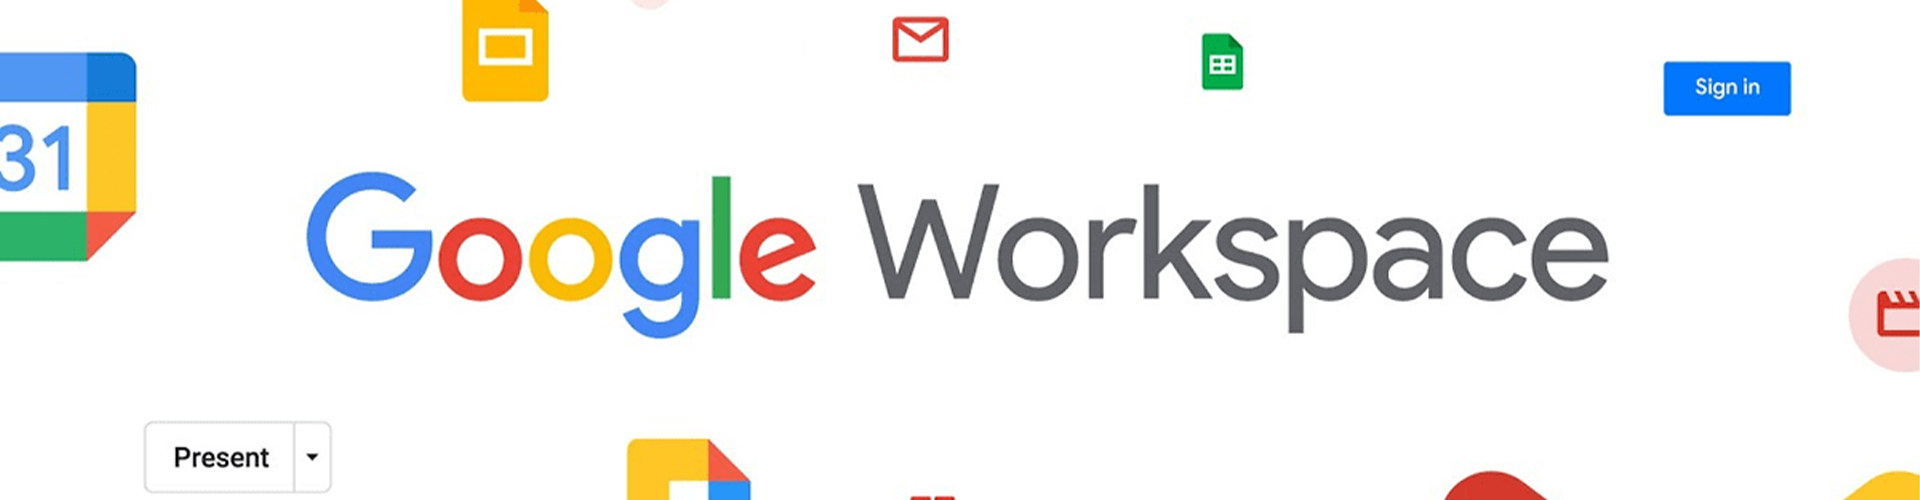 Sự khác biệt giữa Gmail miễn phí và Google Workspace trả phí